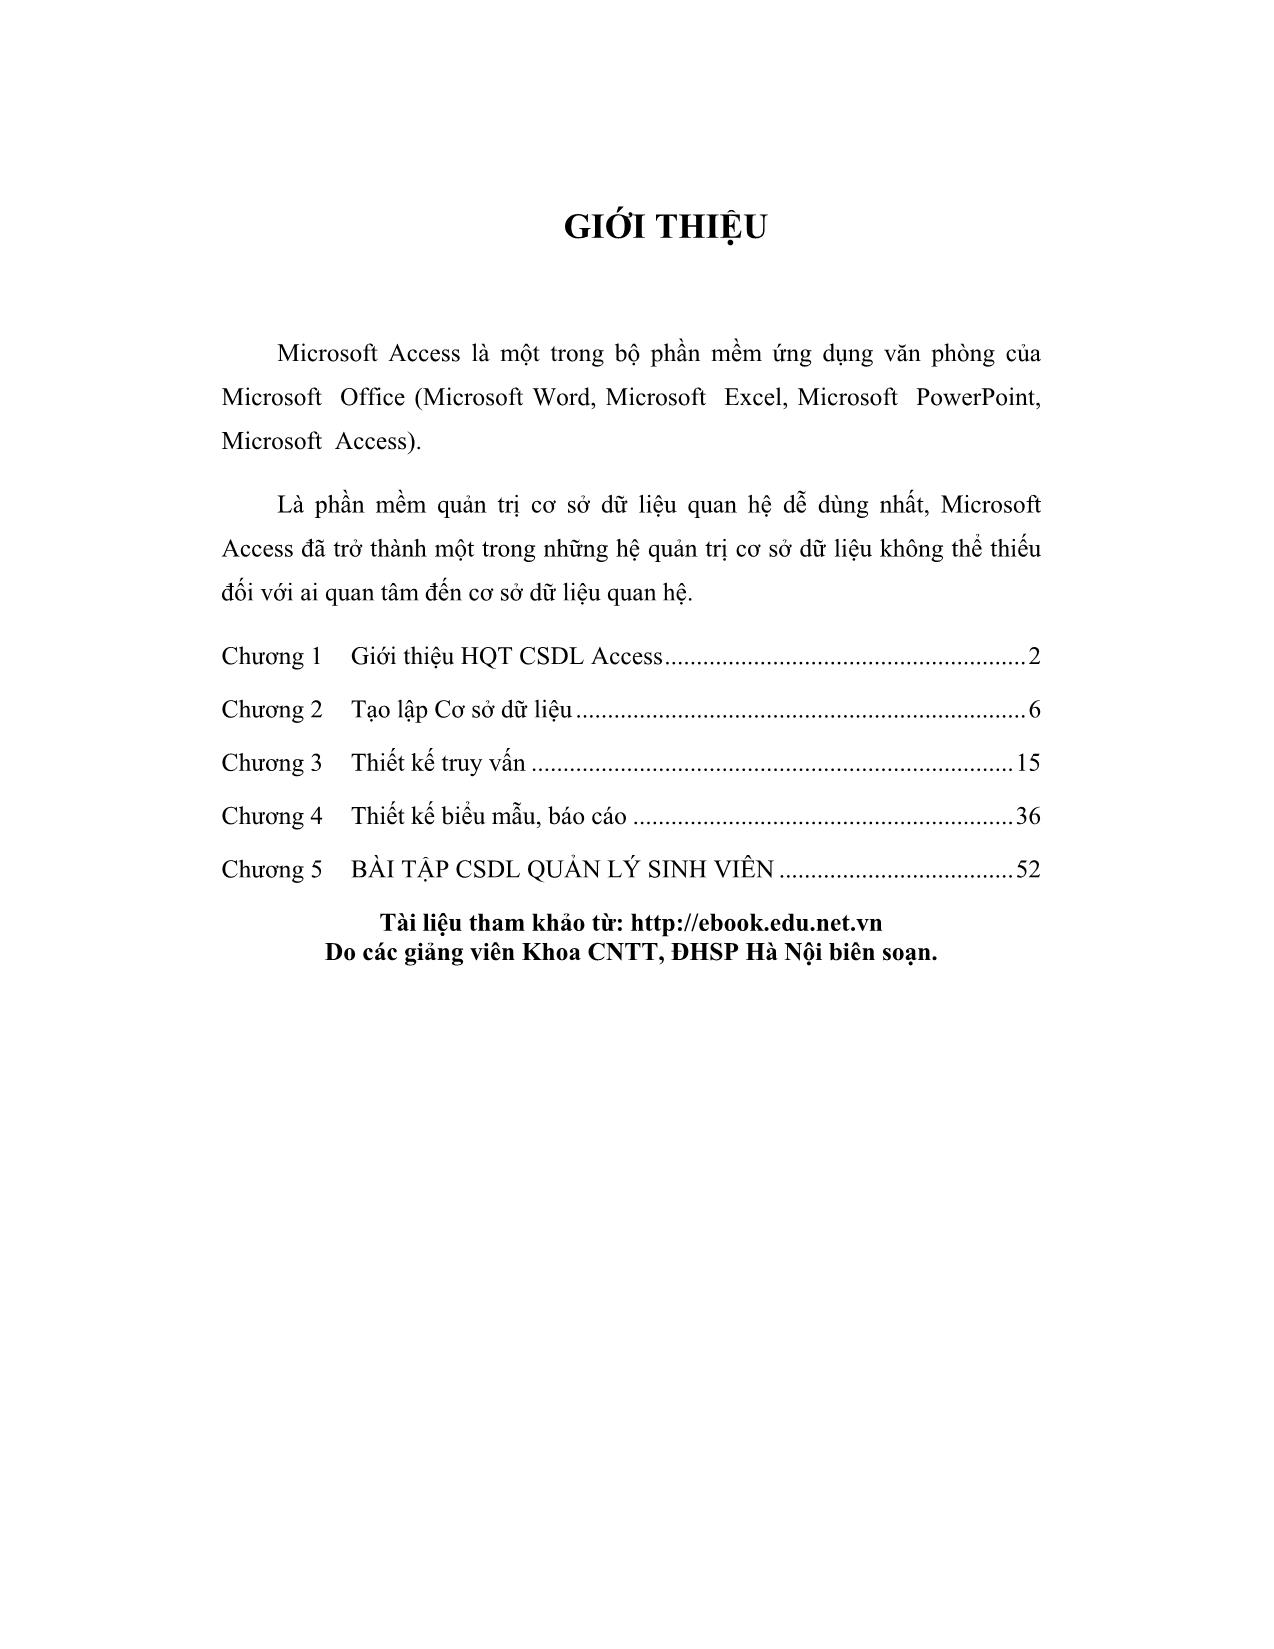 Hệ quản trị CSDL Microsoft Access 2003 trang 1